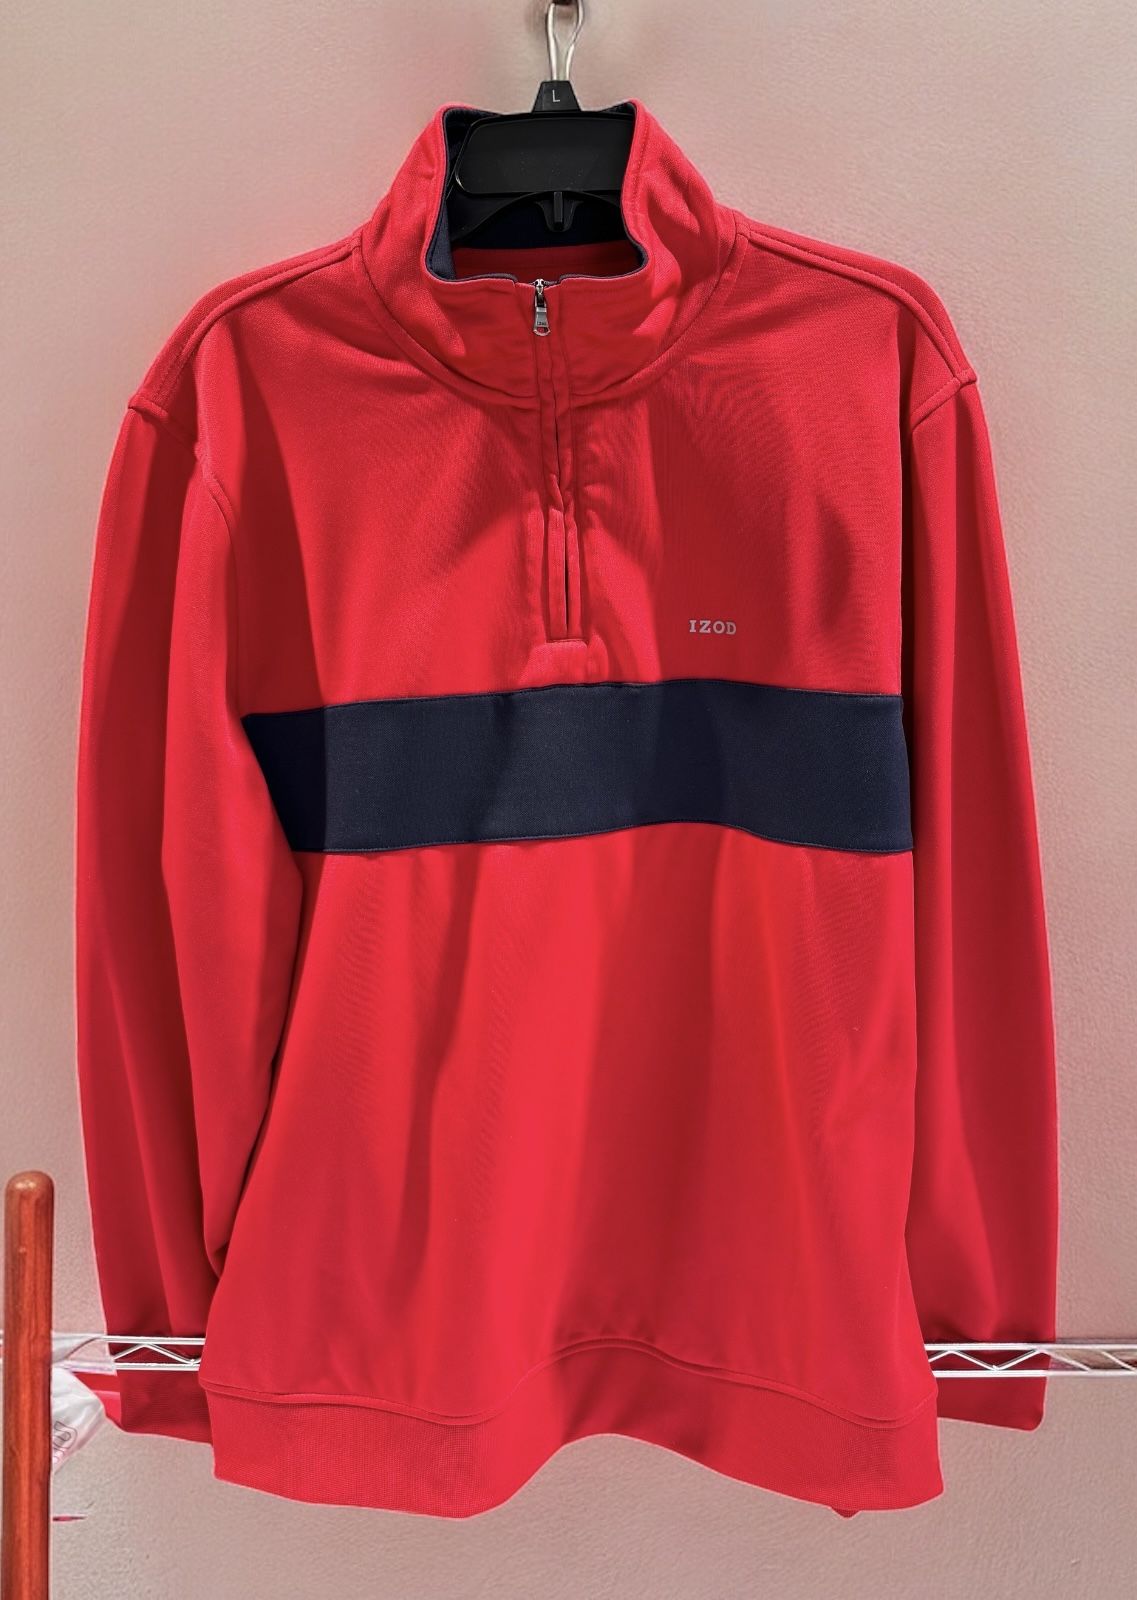 Izod Sweatshirt Mens Large Long Sleeve Golf PerformX 1/4 Zip Red/Black